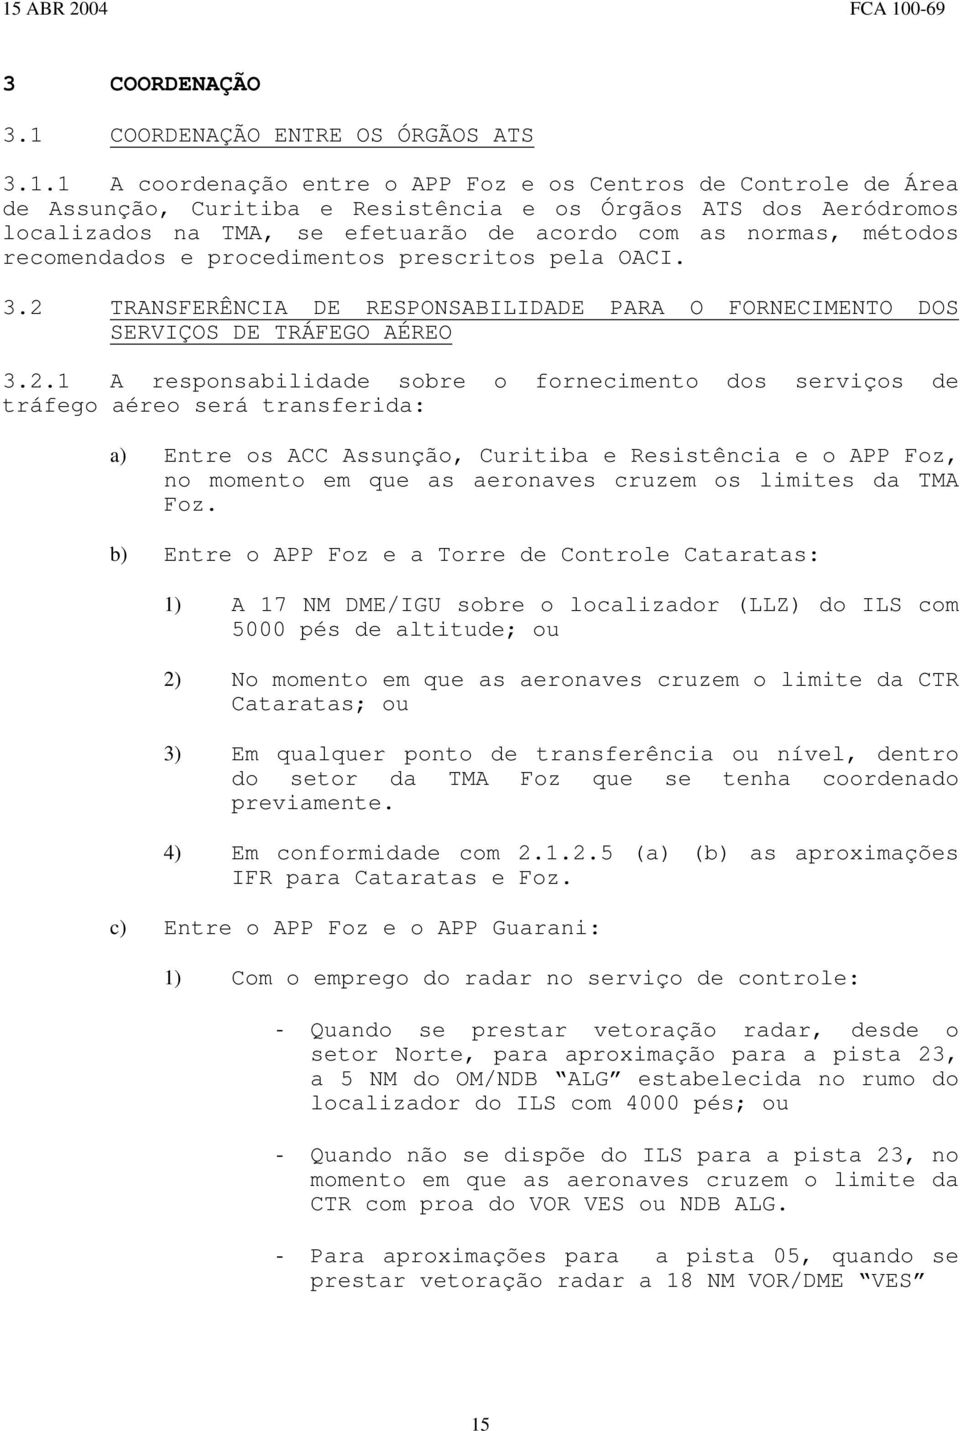 1 A coordenação entre o APP Foz e os Centros de Controle de Área de Assunção, Curitiba e Resistência e os Órgãos ATS dos Aeródromos localizados na TMA, se efetuarão de acordo com as normas, métodos